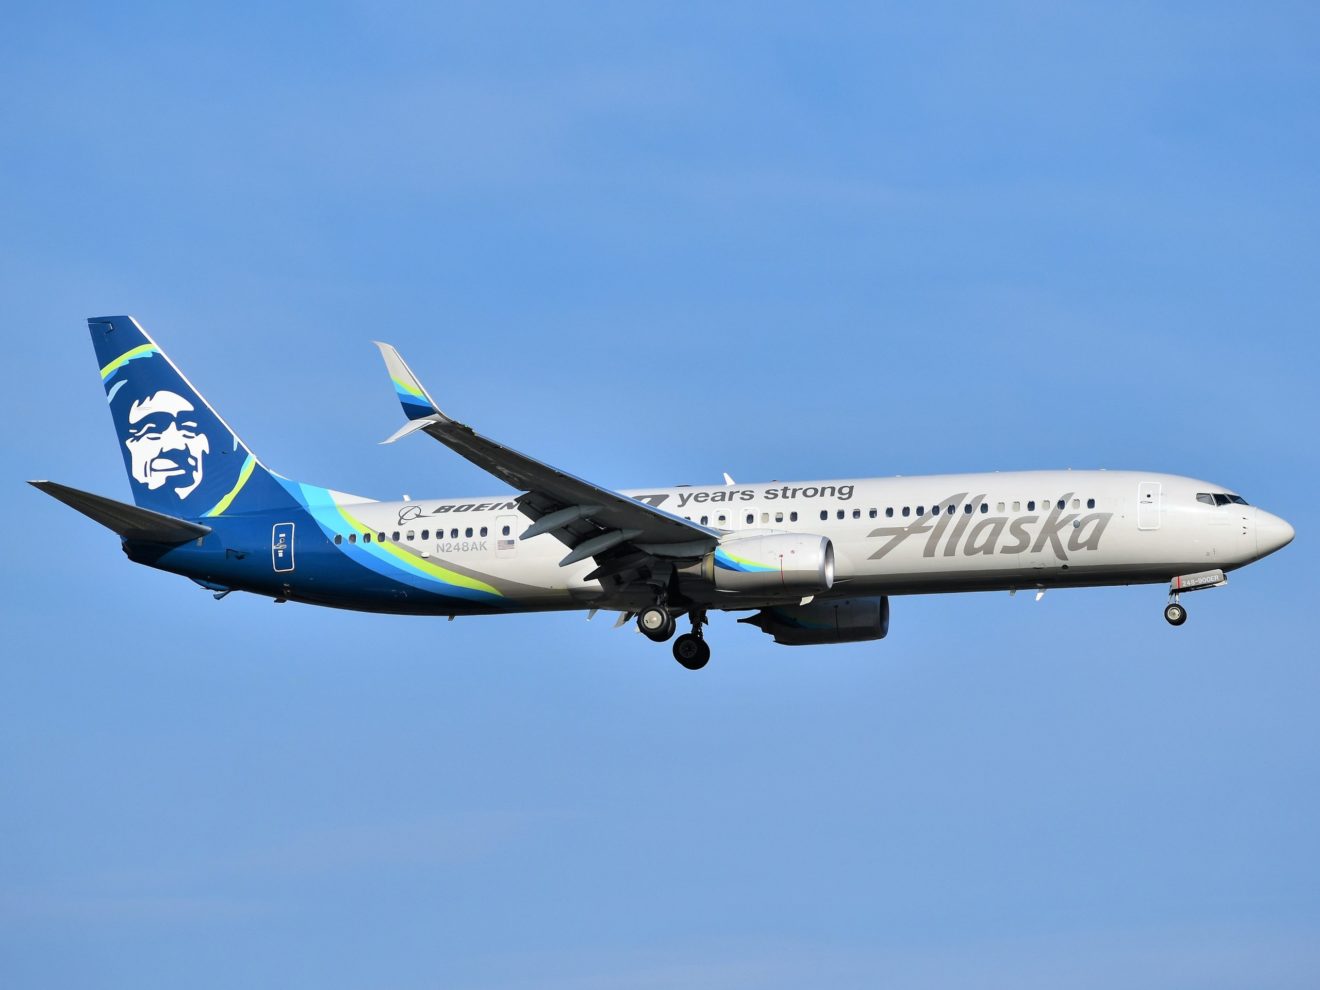 An Alaska Airlines flight approaching EWR Airport with landing gear down.